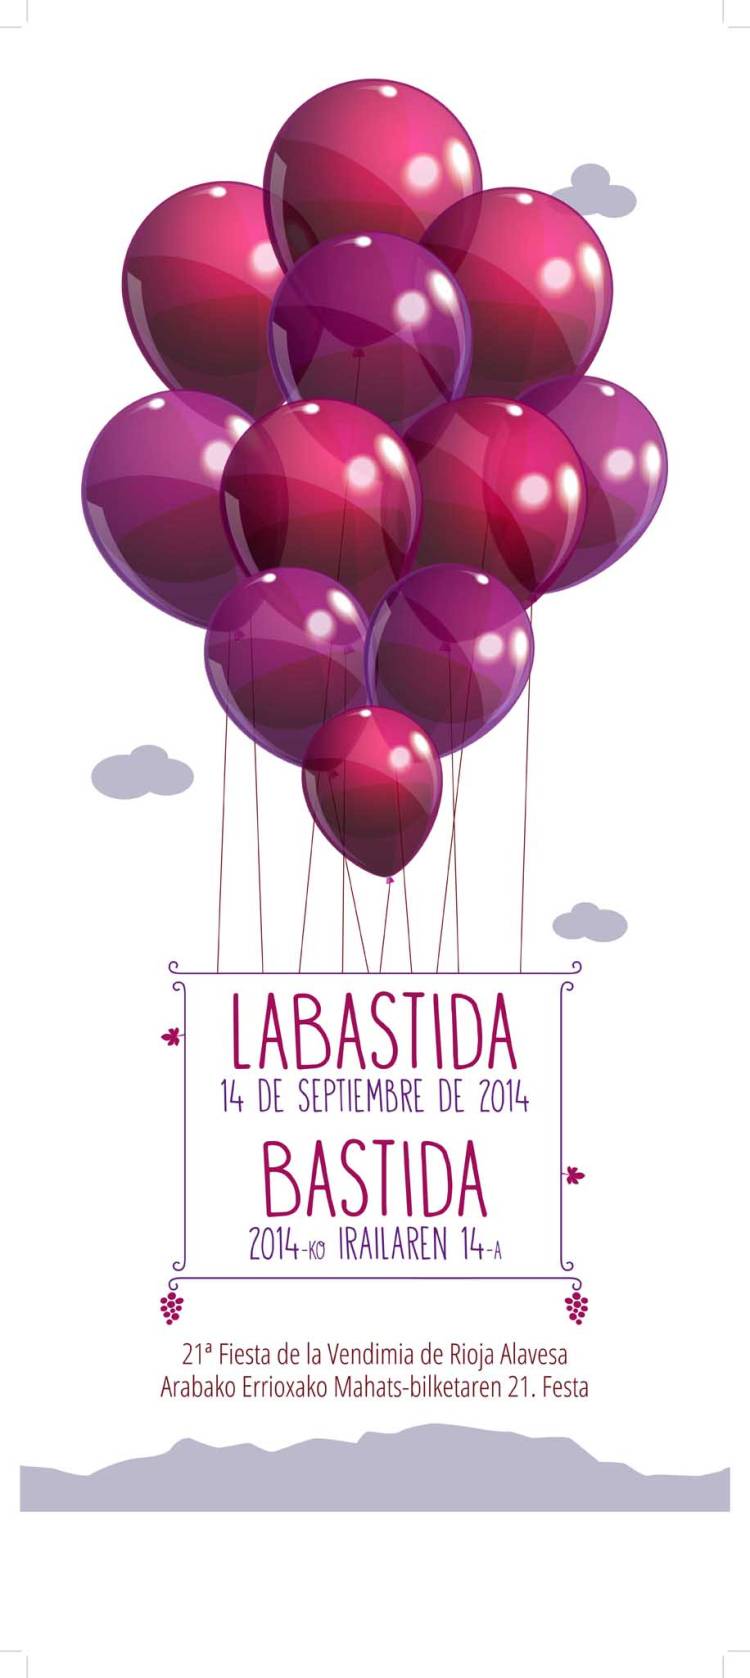 Ya tenemos cartel de la Fiesta de la Vendimia de Rioja Alavesa 1